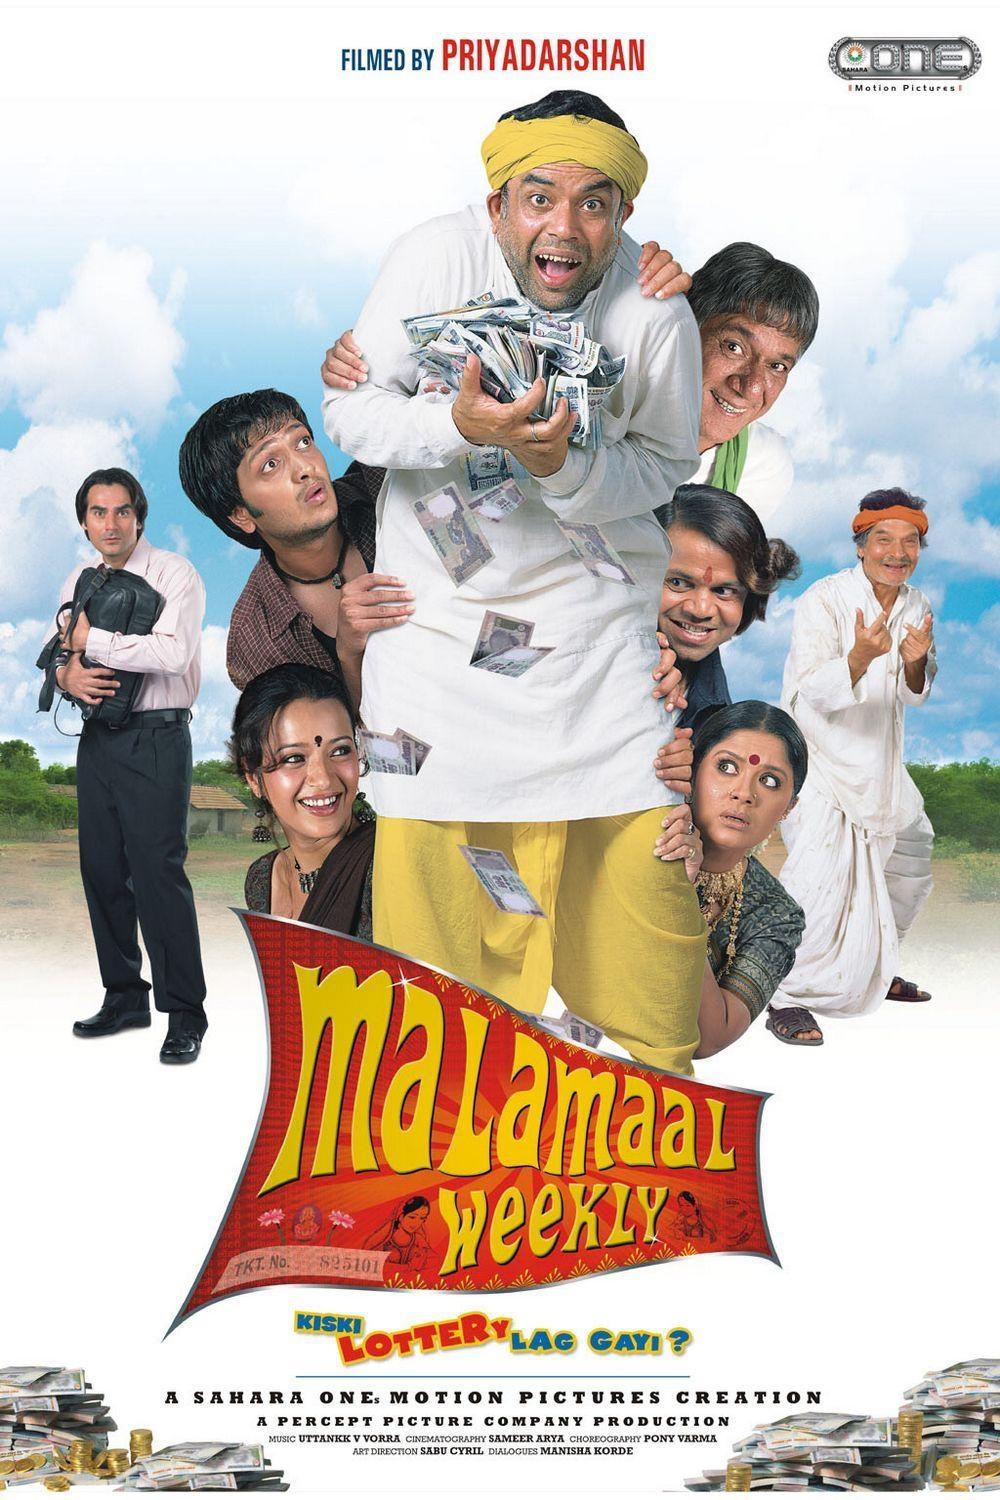 Постер фильма Malamaal Weekly